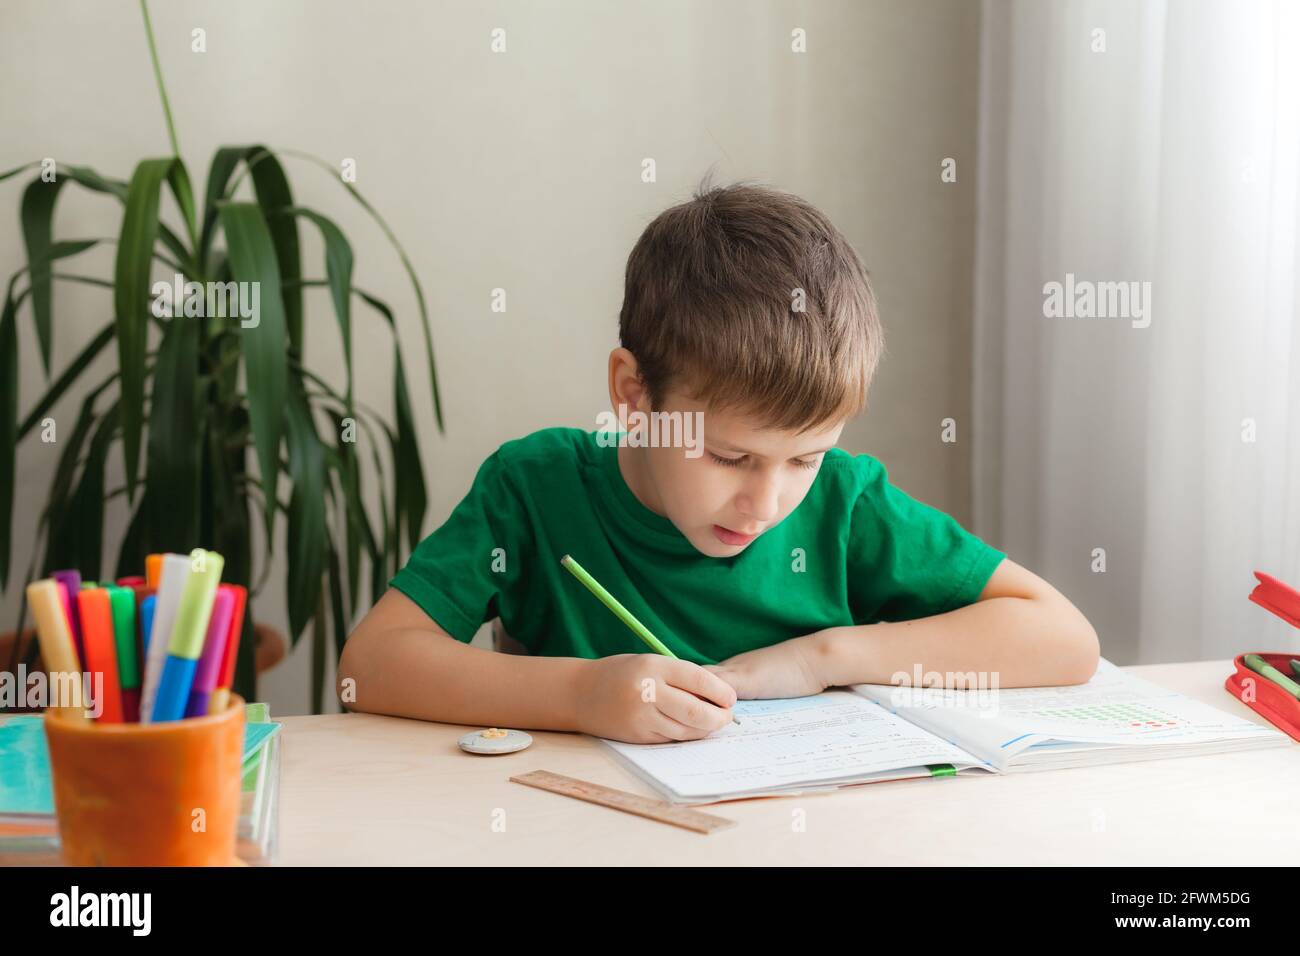 7 Jahre alter Junge, der Unterricht macht und am Schreibtisch in seinem Zimmer sitzt. Kind schreibt Hausaufgaben im Notizbuch Stockfoto